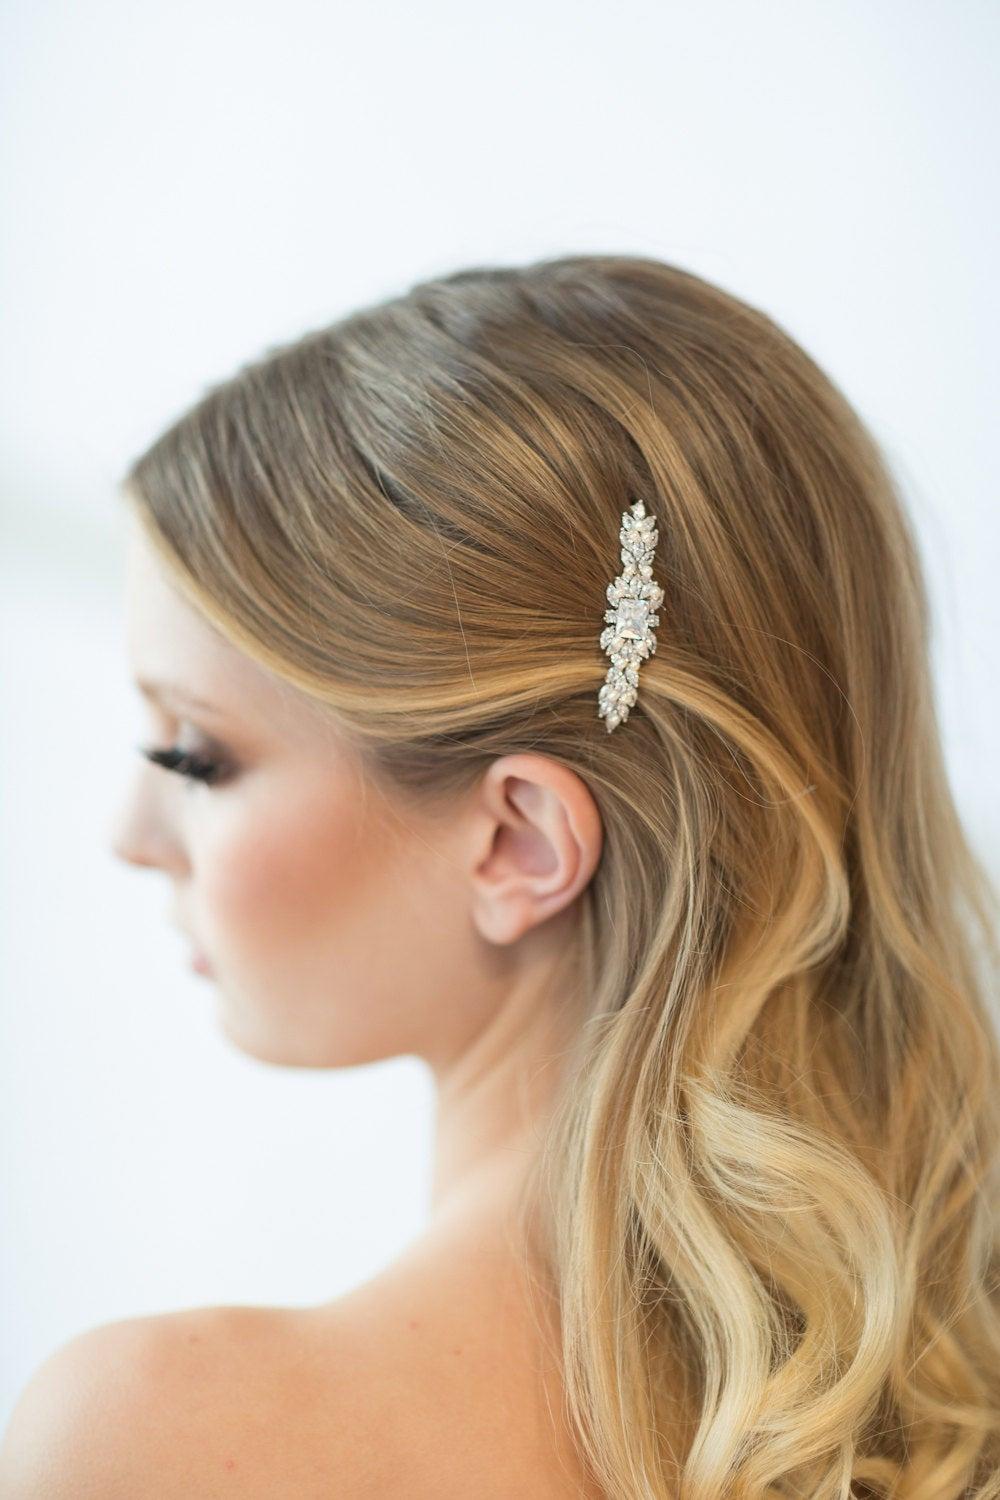  36 Pcs rhinestone hair clip wedding hair clip hair